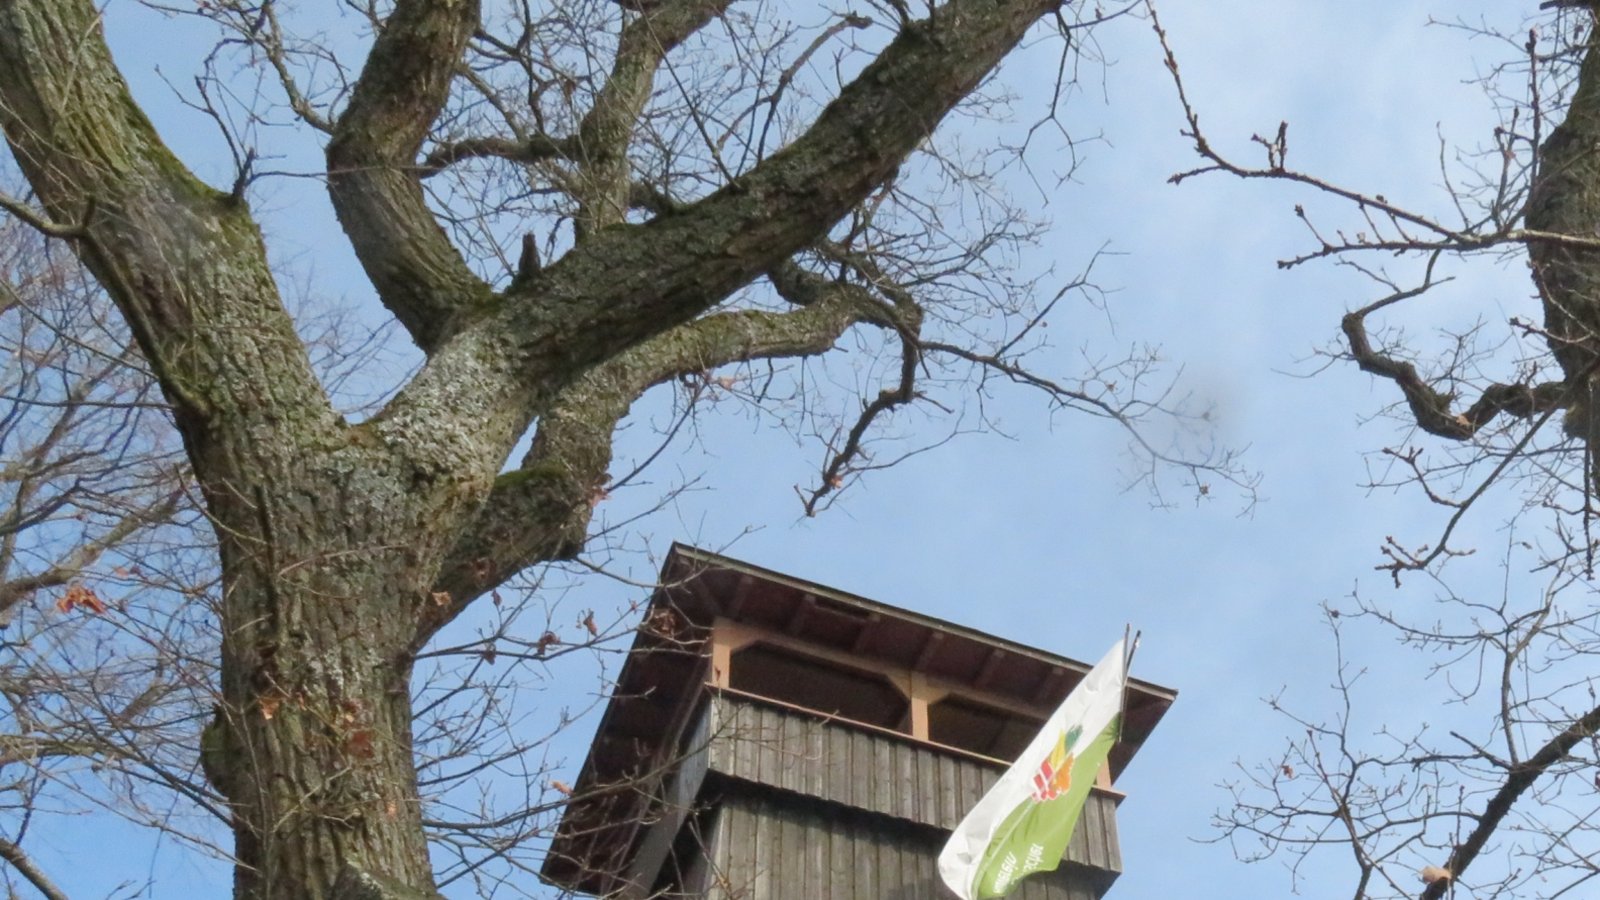 Am Eselsburgturm über Ensingen weht sonntags wieder die Fahne. Das heißt, es wird bewirtet.  Foto: Arning